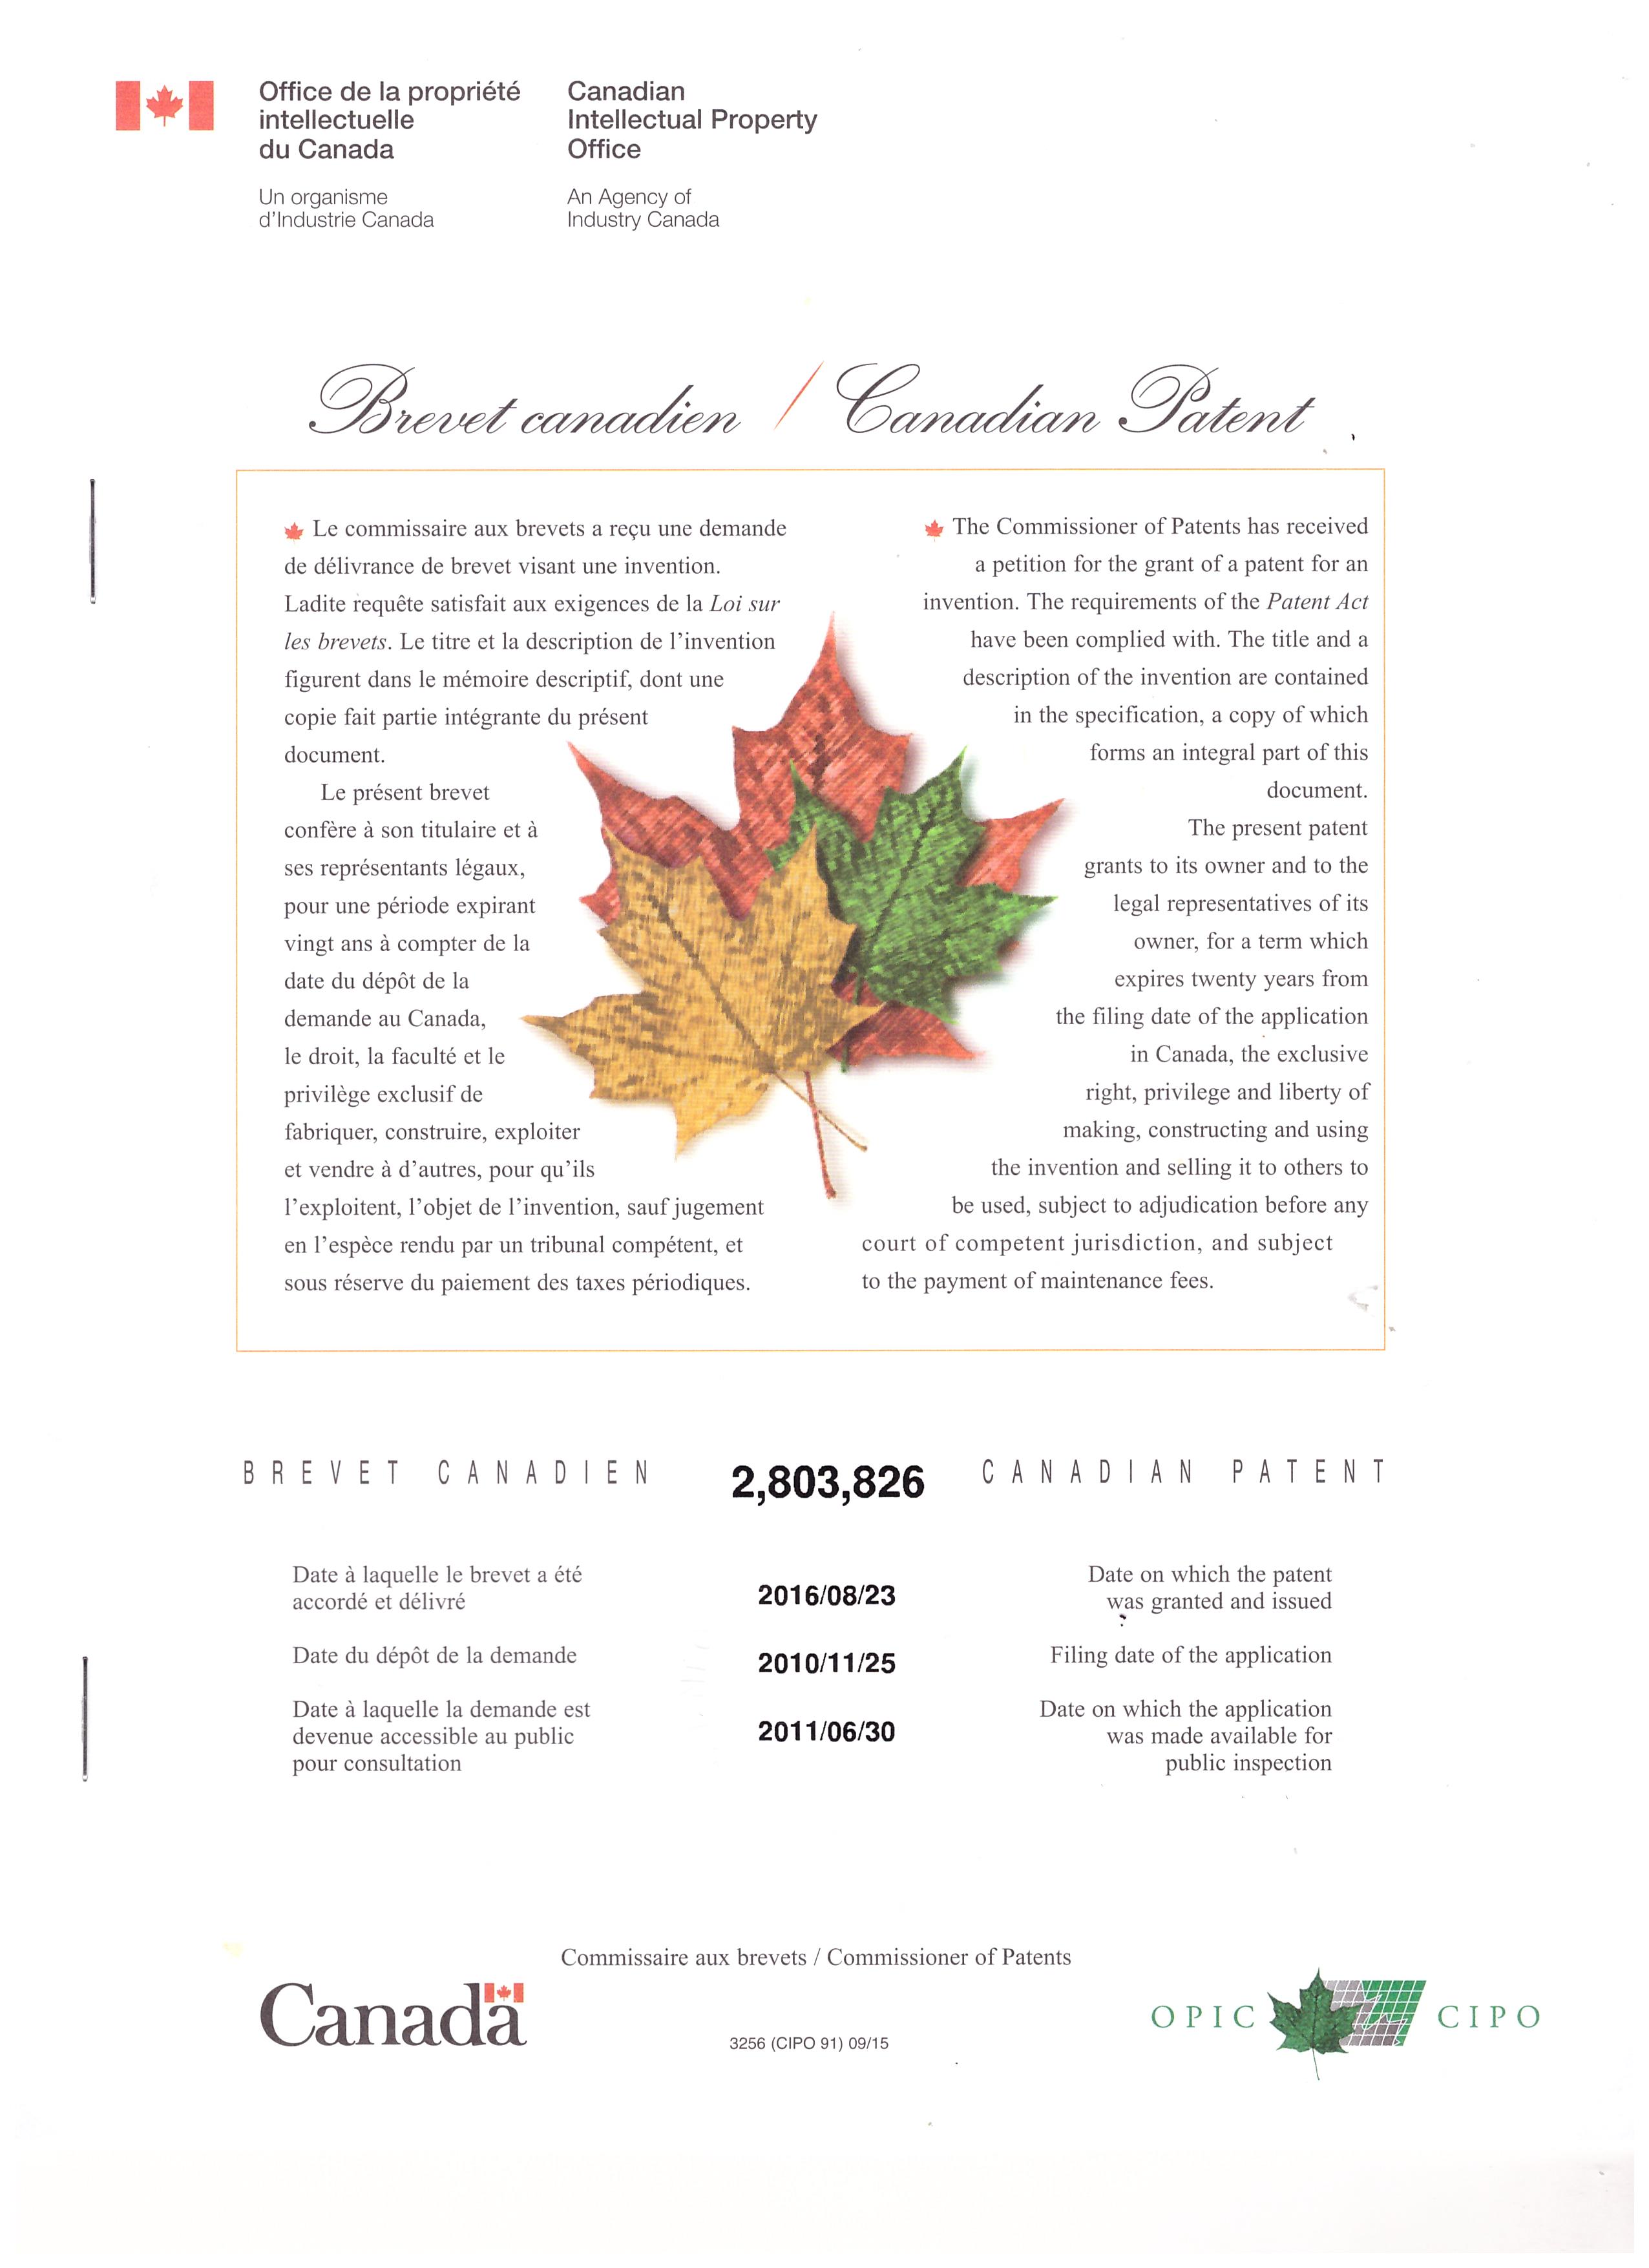 патент Канады, полученный фирмой Парафарм